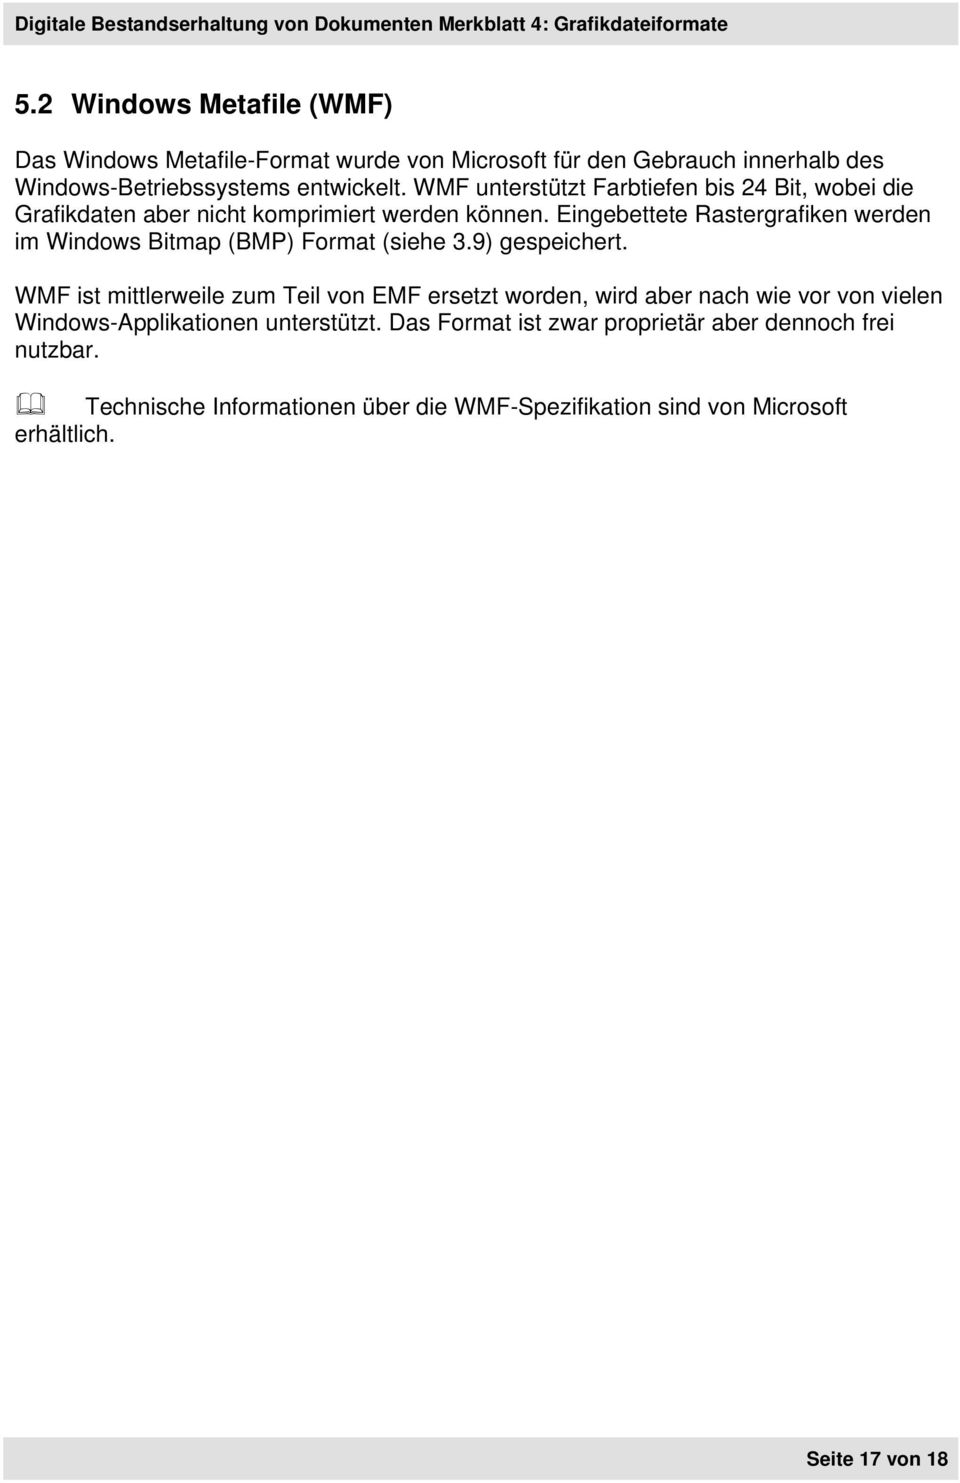 Eingebettete Rastergrafiken werden im Windows Bitmap (BMP) Format (siehe 3.9) gespeichert.